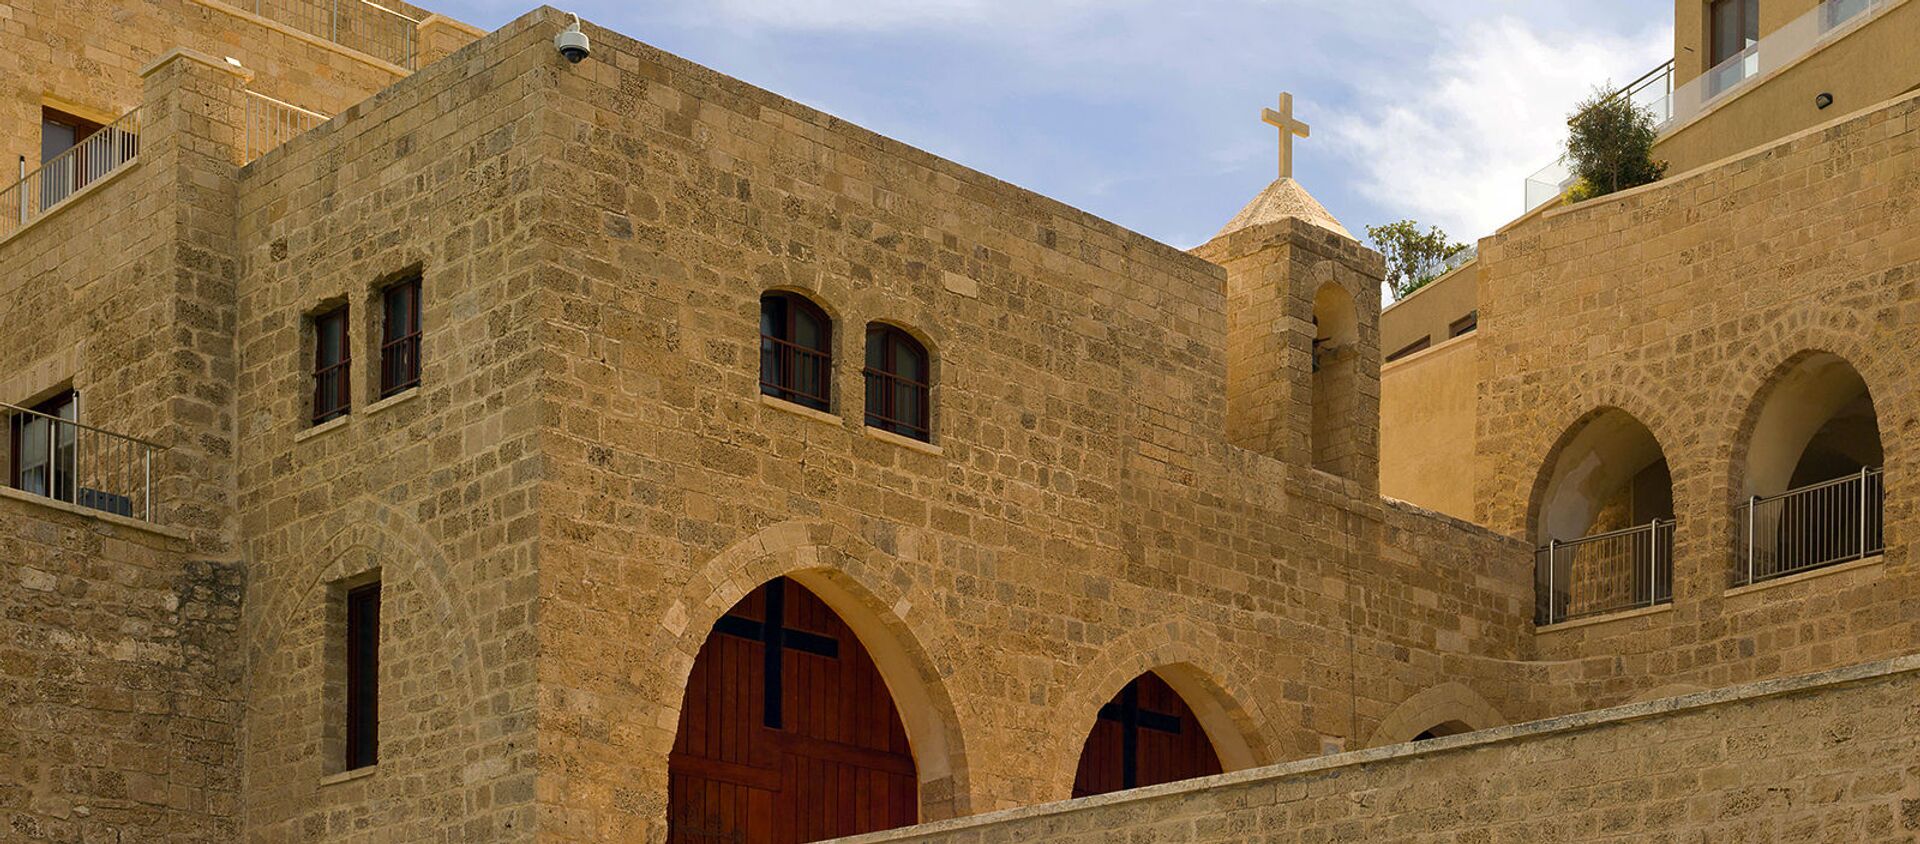 Монастырь Святого Николая в Яффе, Израиль - Sputnik Արմենիա, 1920, 02.08.2020